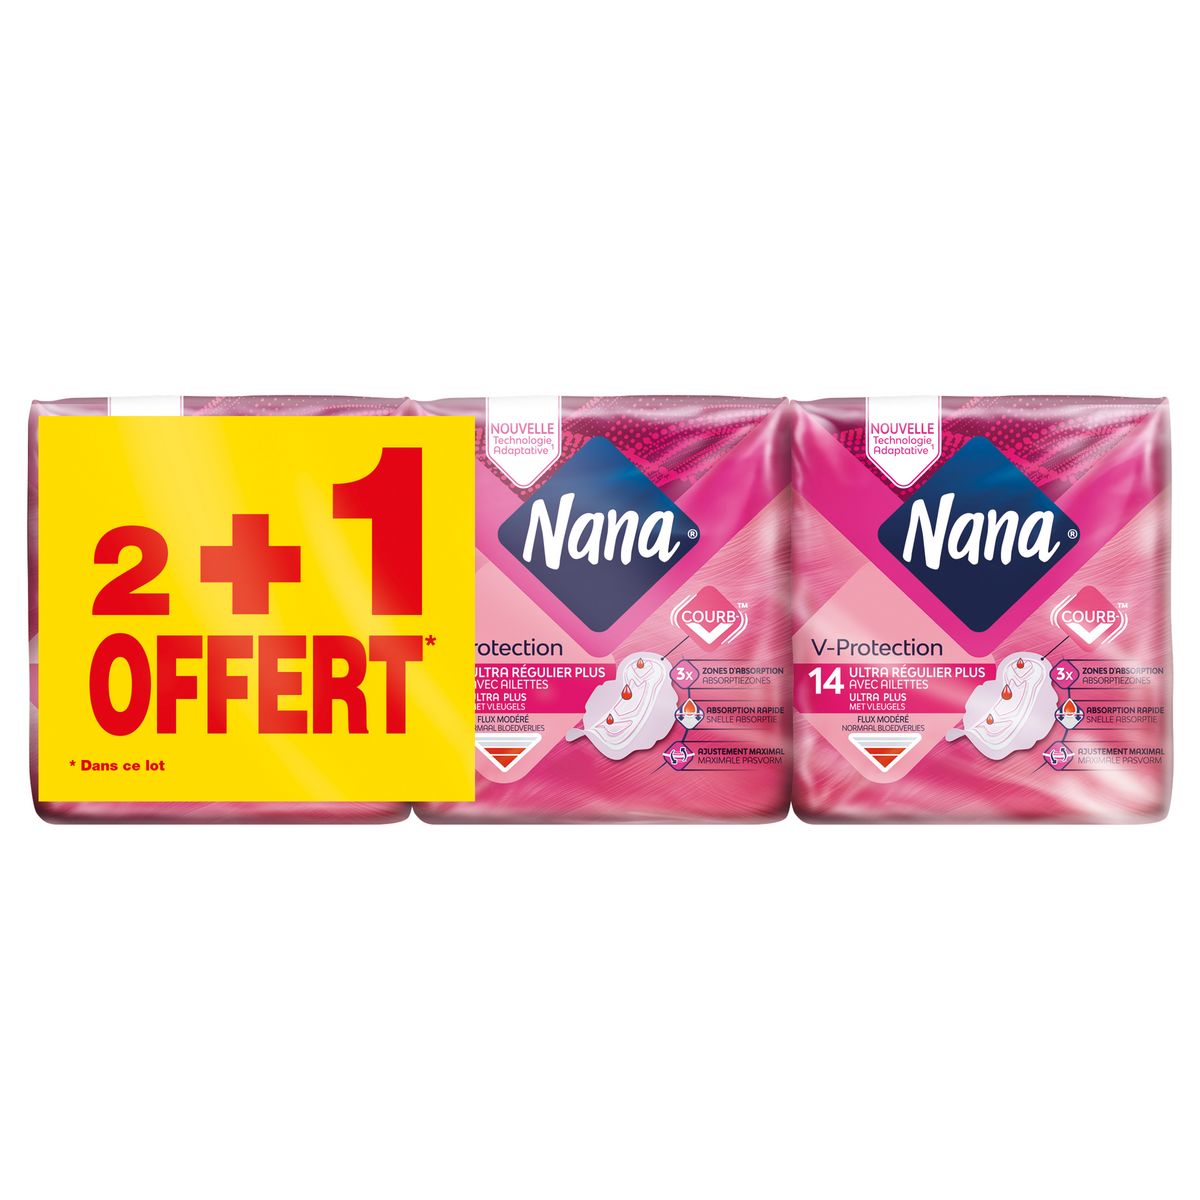 NANA Serviettes hygiéniques ultra régulier plus avec ailettes 2+1 offert 3x14 serviettes